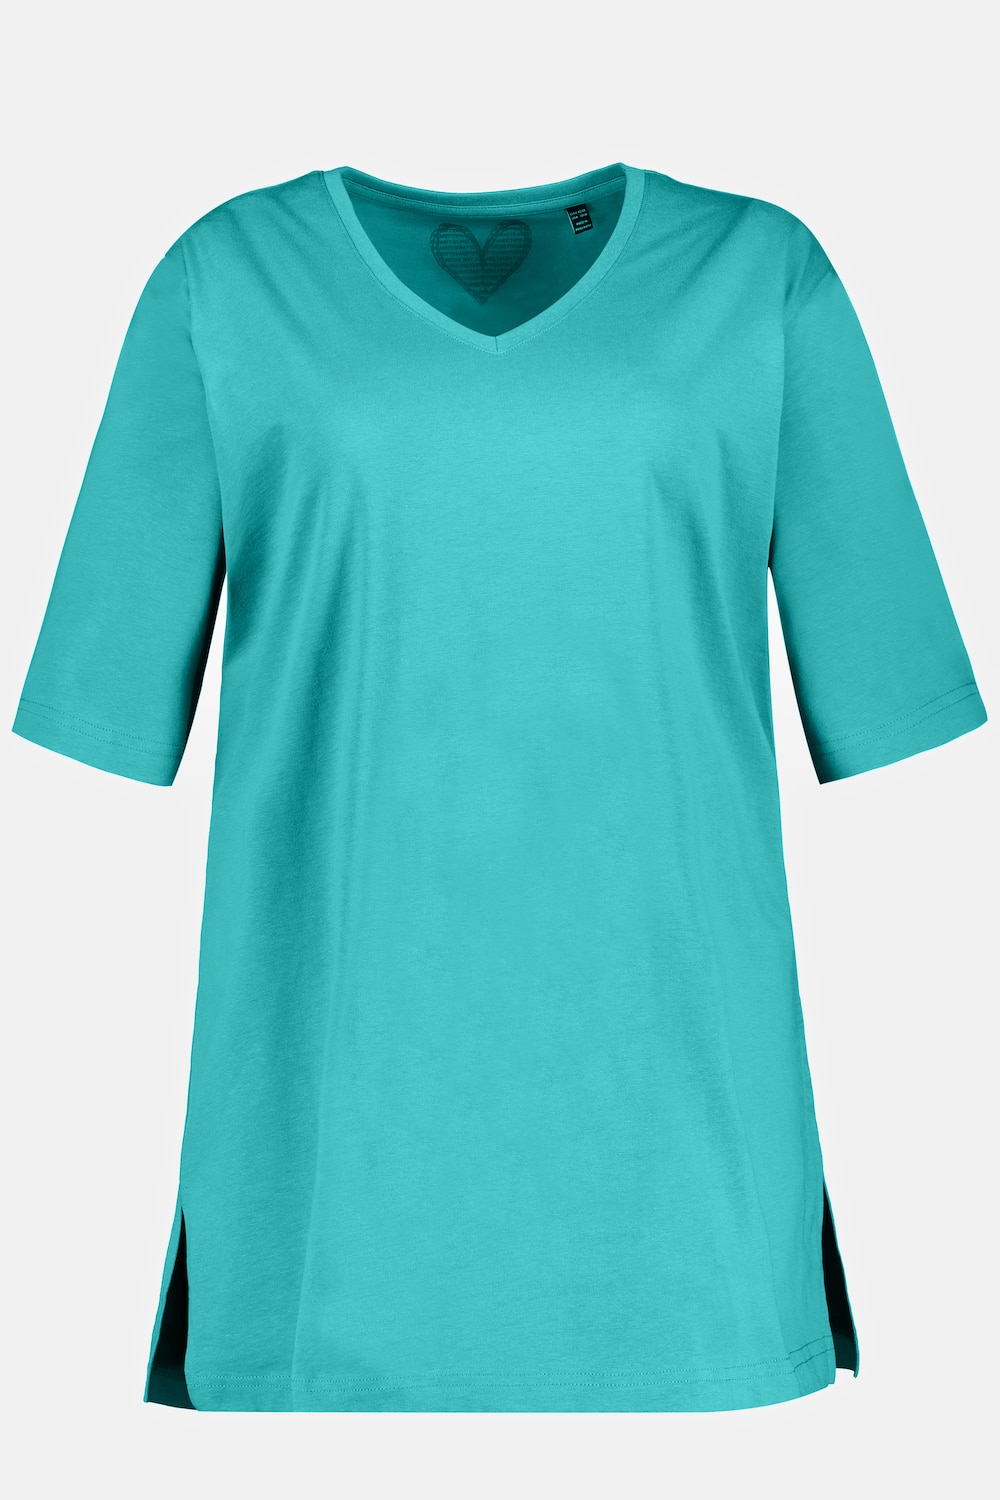 Grote Maten T-shirt, Dames, turquoise, Maat: 58/60, Ulla Popken